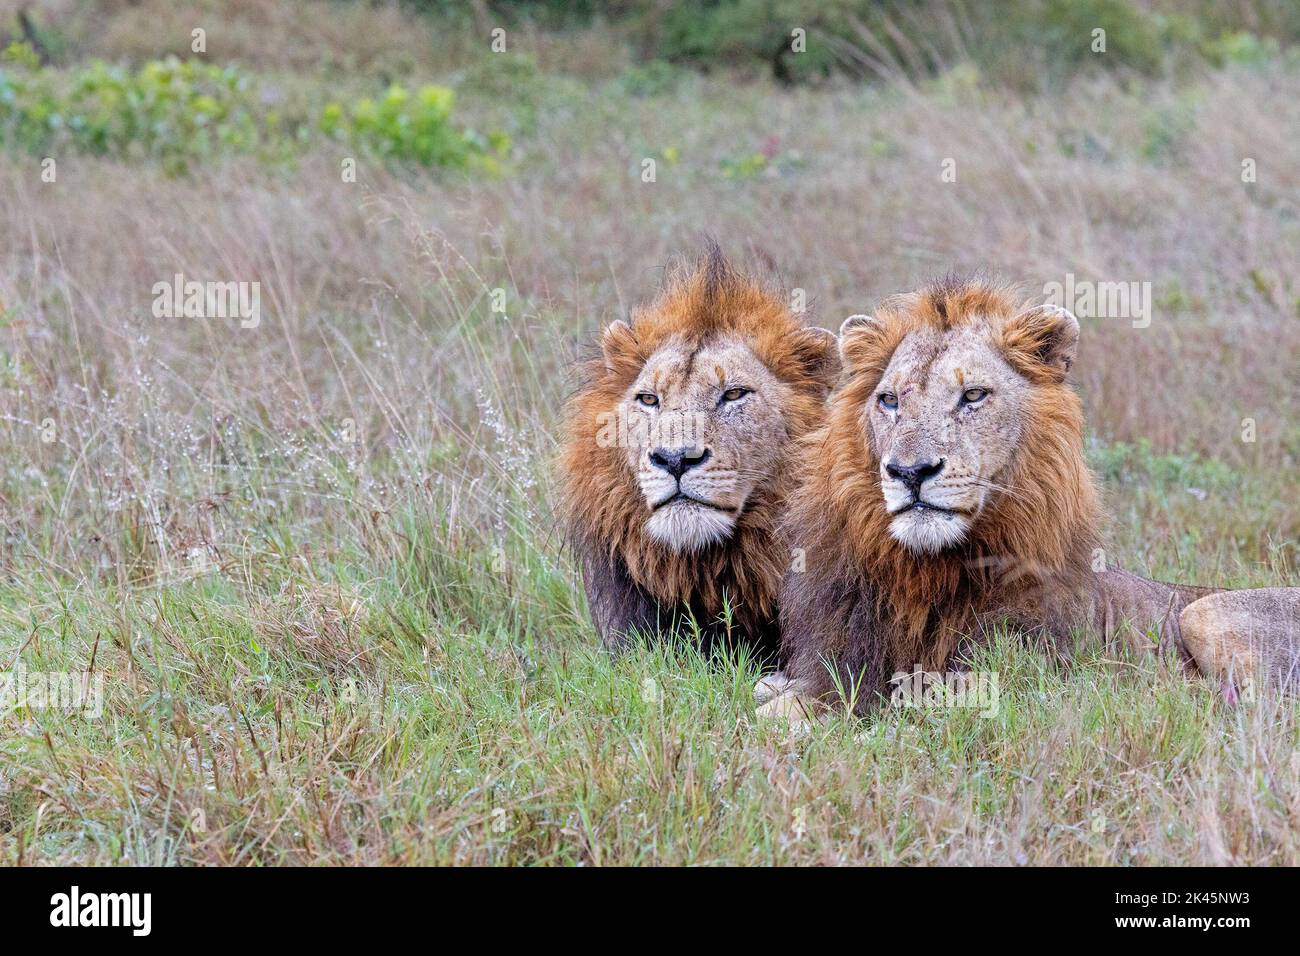 Deux lions mâles, Panthera leo, se trouvent ensemble dans une longue herbe Banque D'Images